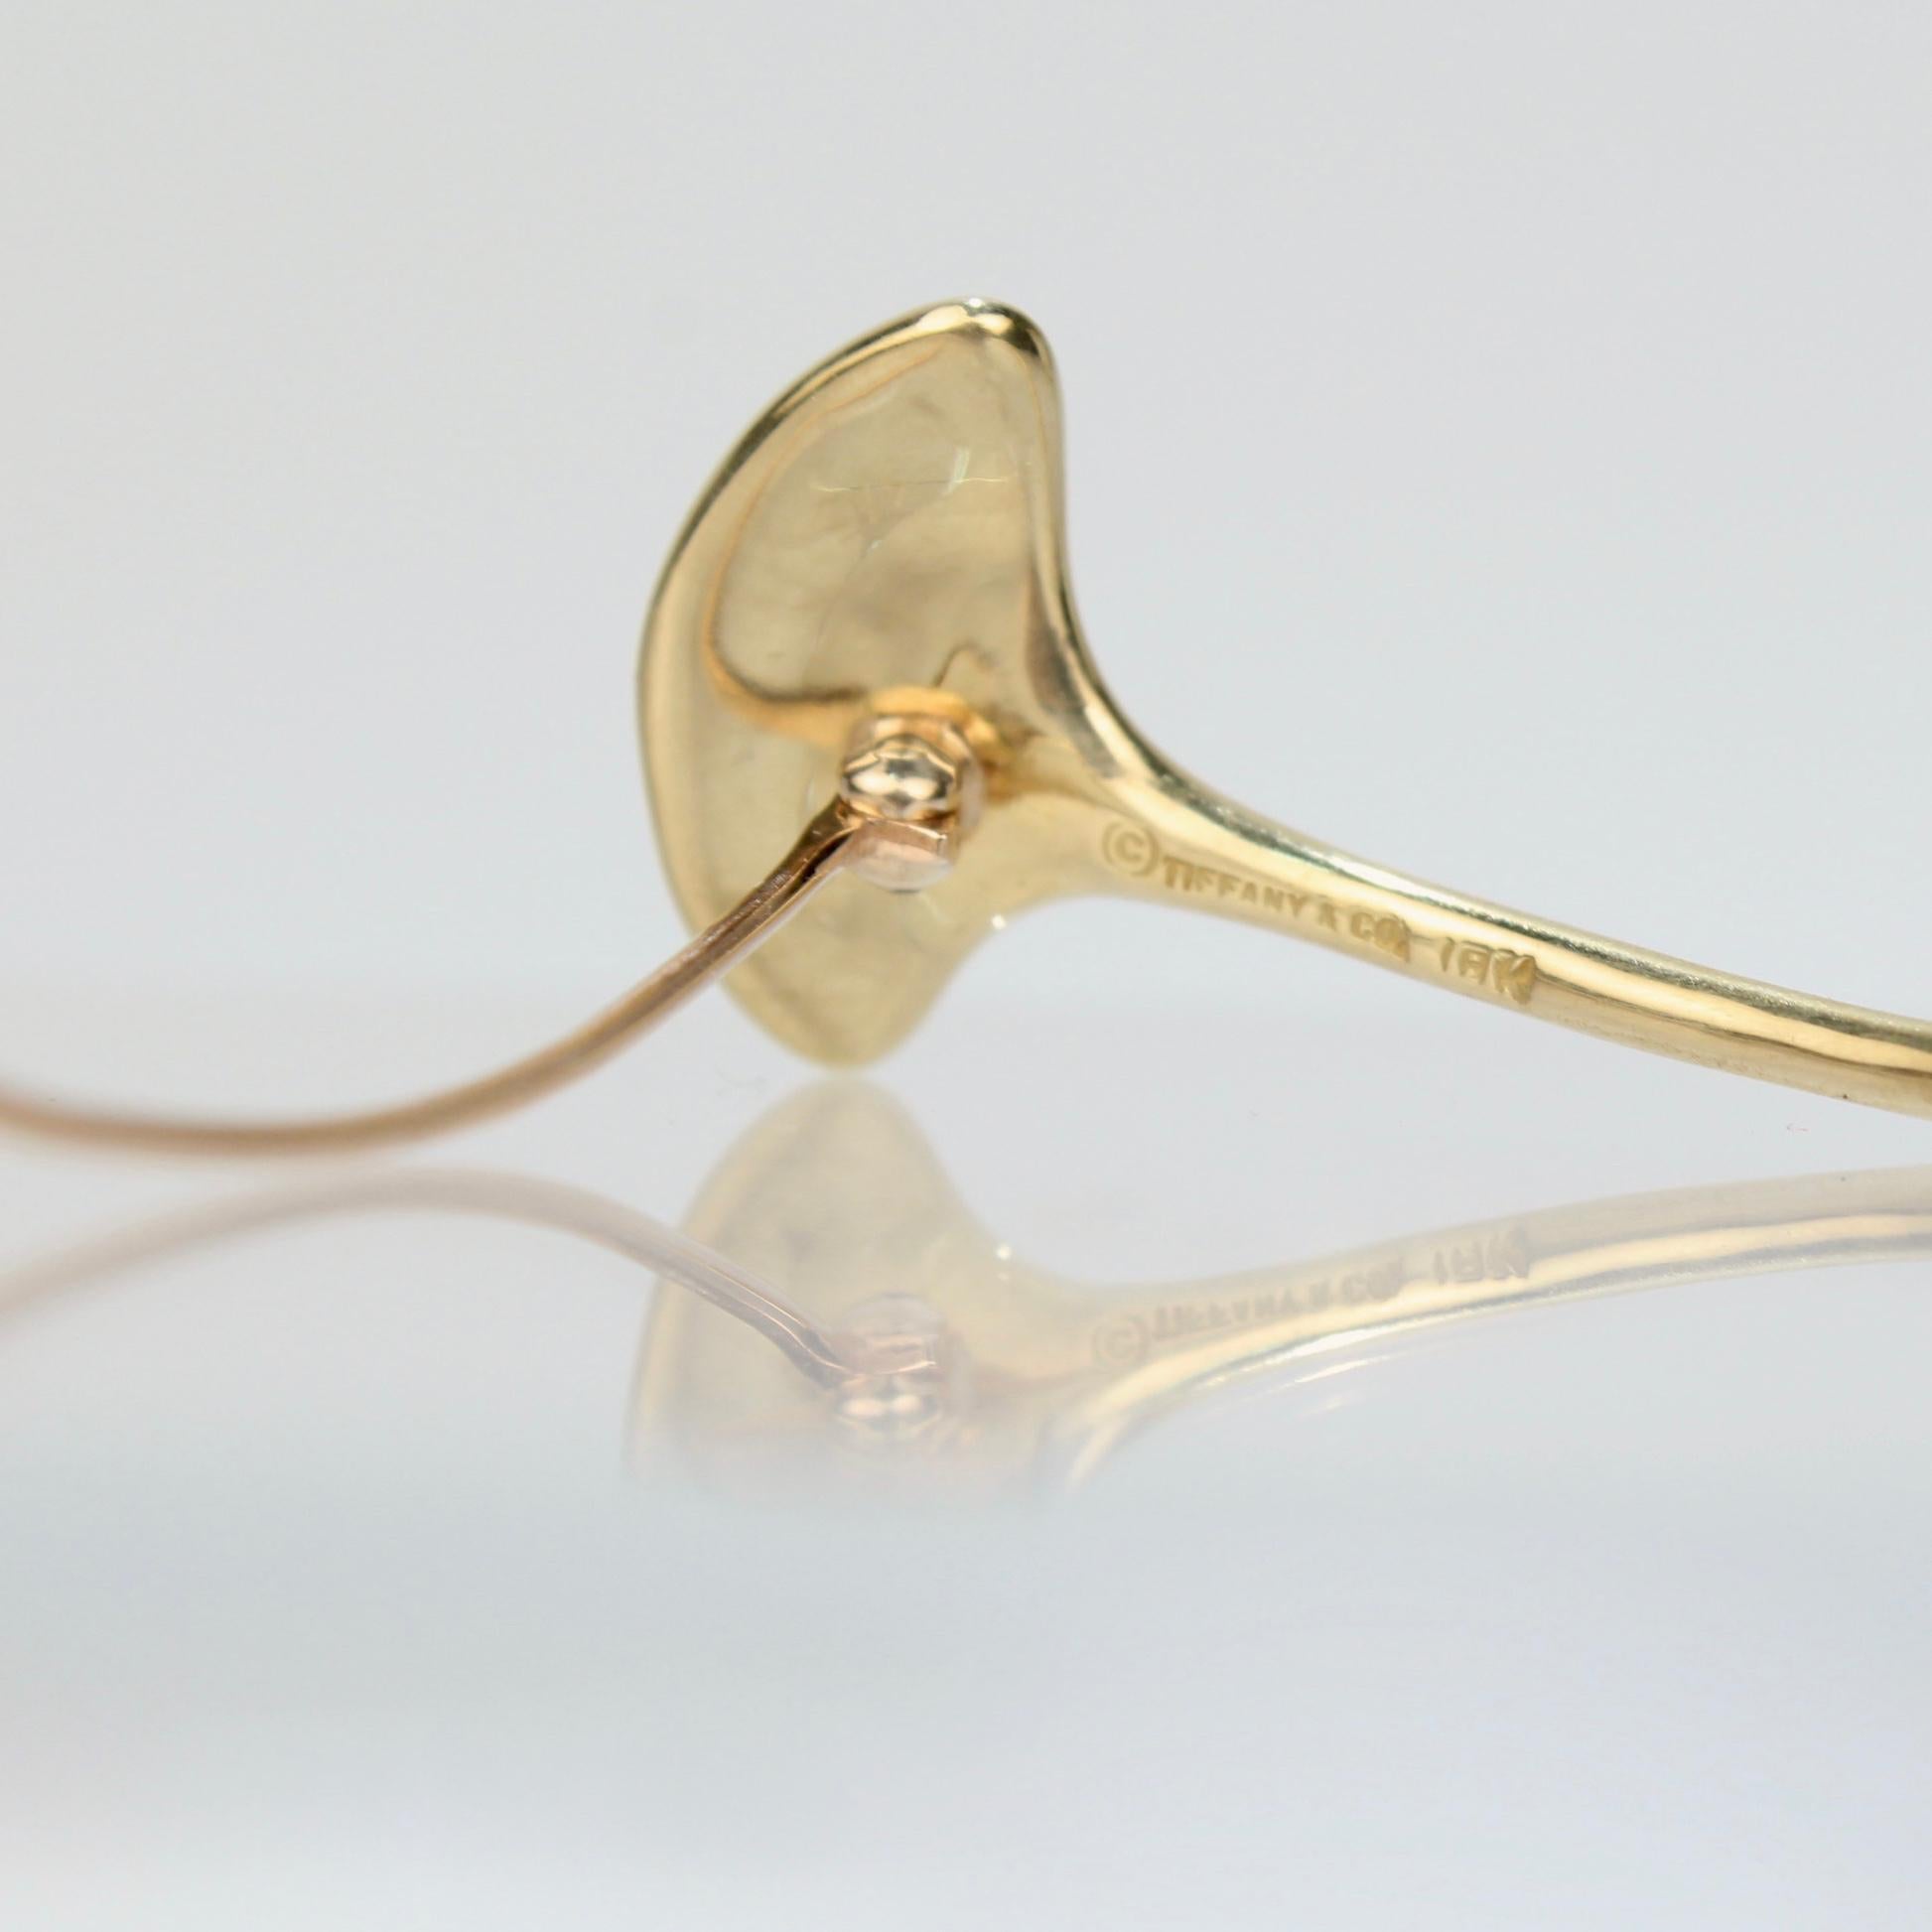 Modern Tiffany & Co. 18 Karat Gold Stylized Gingko Leaf Brooch or Pin 1